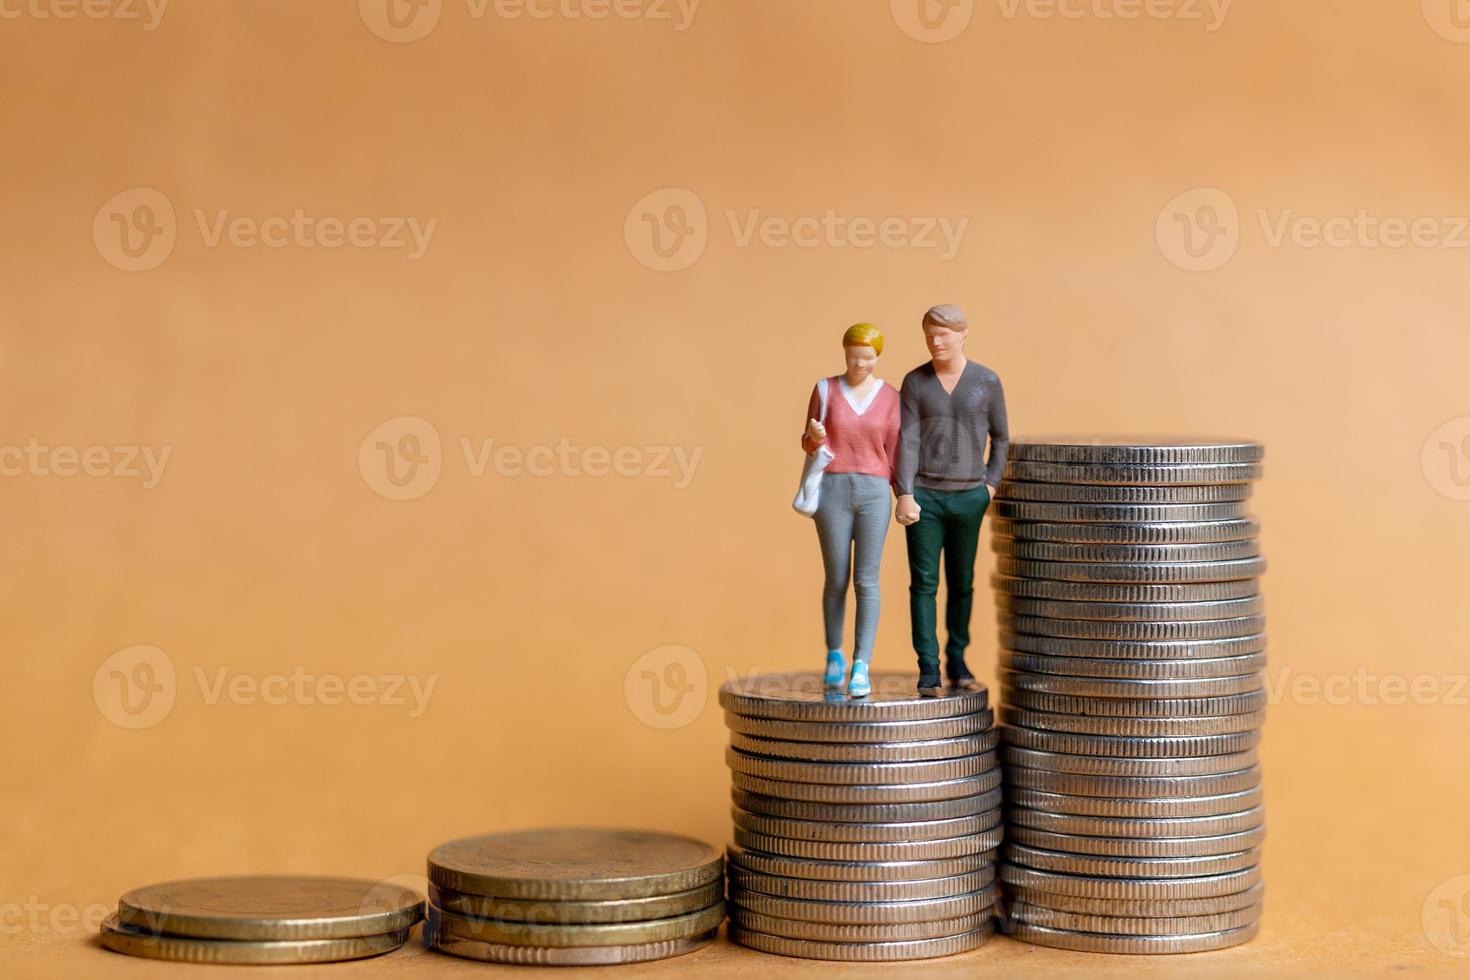 miniatyr människor, lyckligt par stående på mynt stack foto